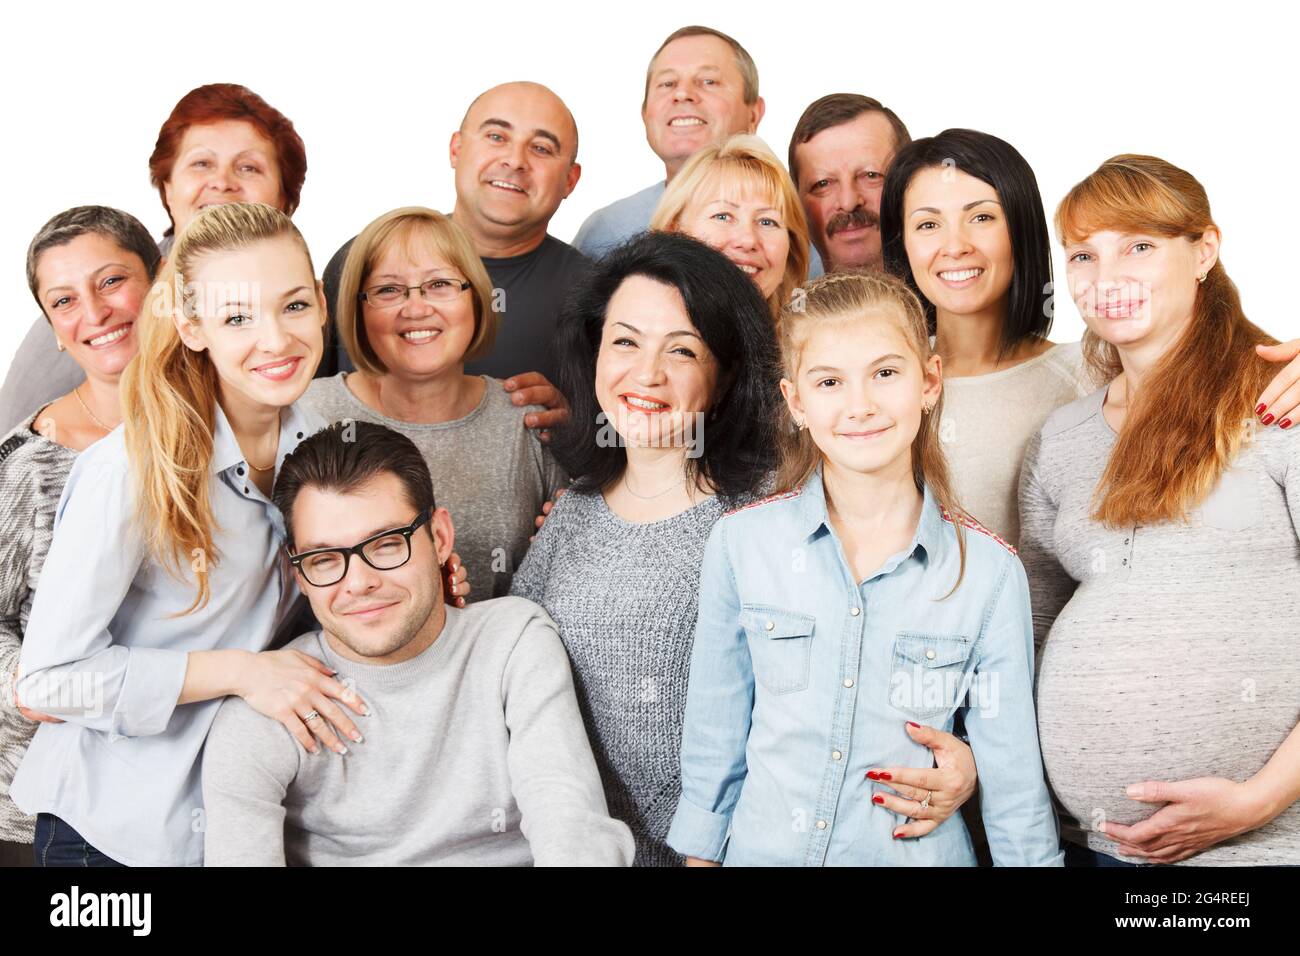 Portrait d'une diversité d'âge mixte et de la famille multigénération s'embrassant et se tenant ensemble. Isolé sur fond blanc. Banque D'Images